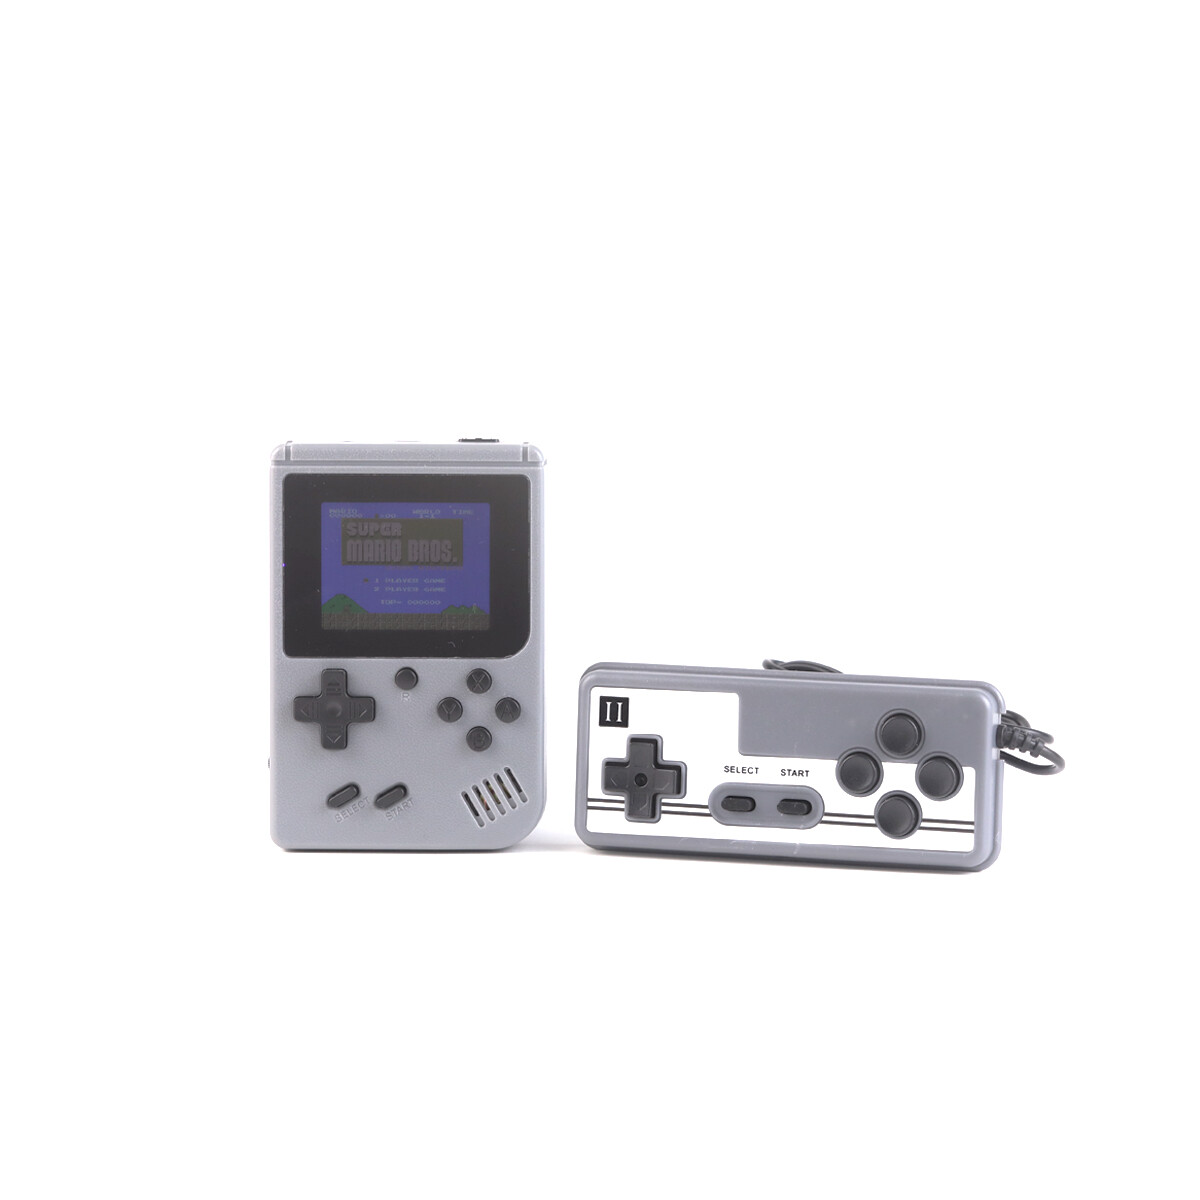 Mini Consola Retro 400 Juegos Tipo Gameboy - Gris 